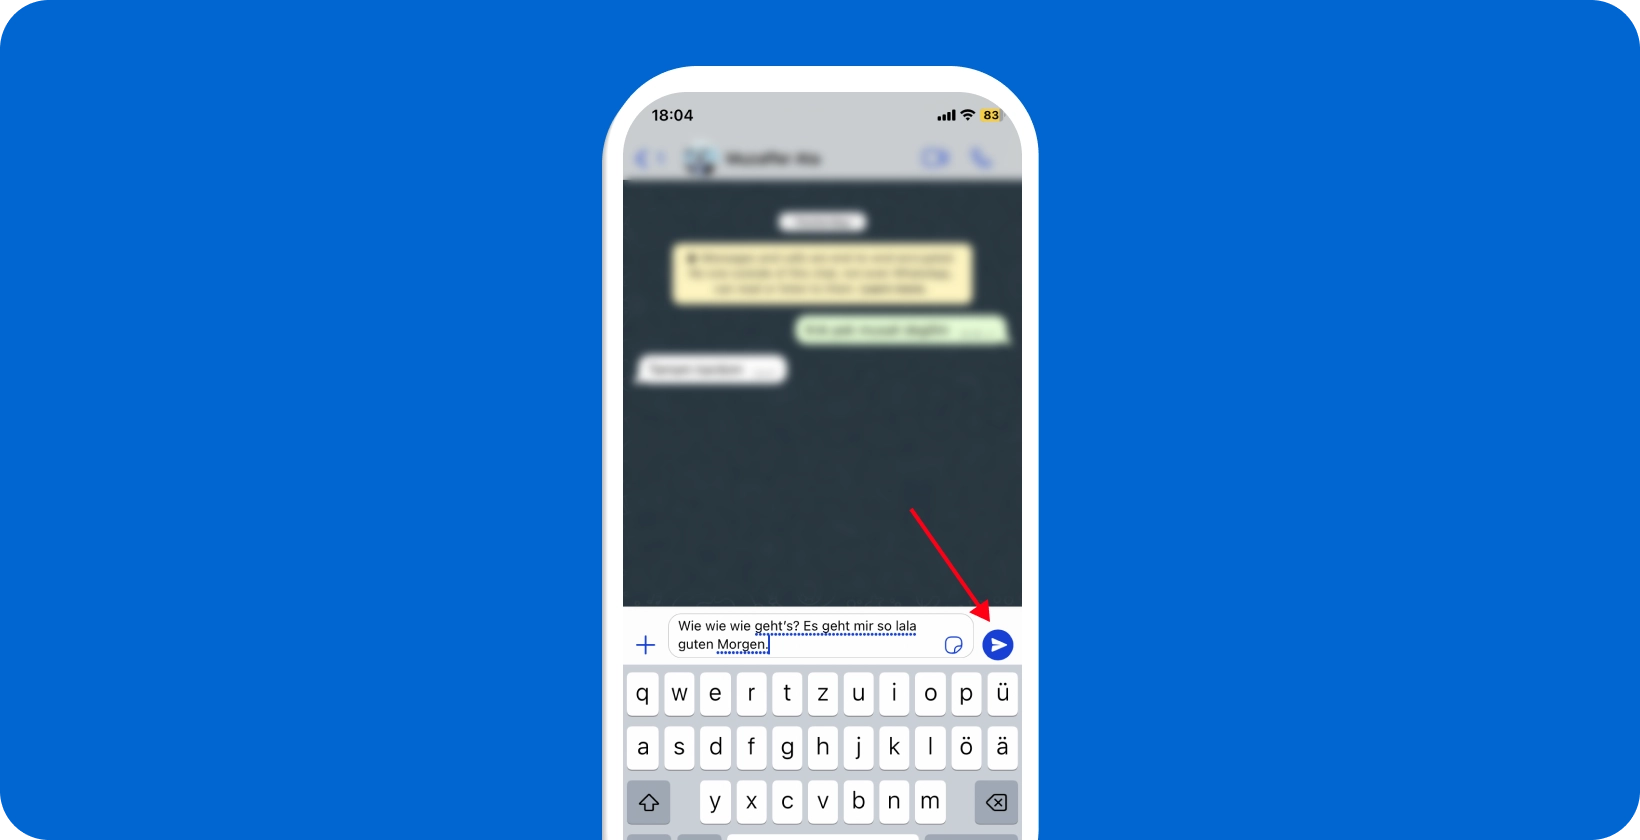 מסך סמארטפון המציג את תכונת ההכתבה הקולית של WhatsApp בשימוש, עם סמל מיקרופון מודגש.